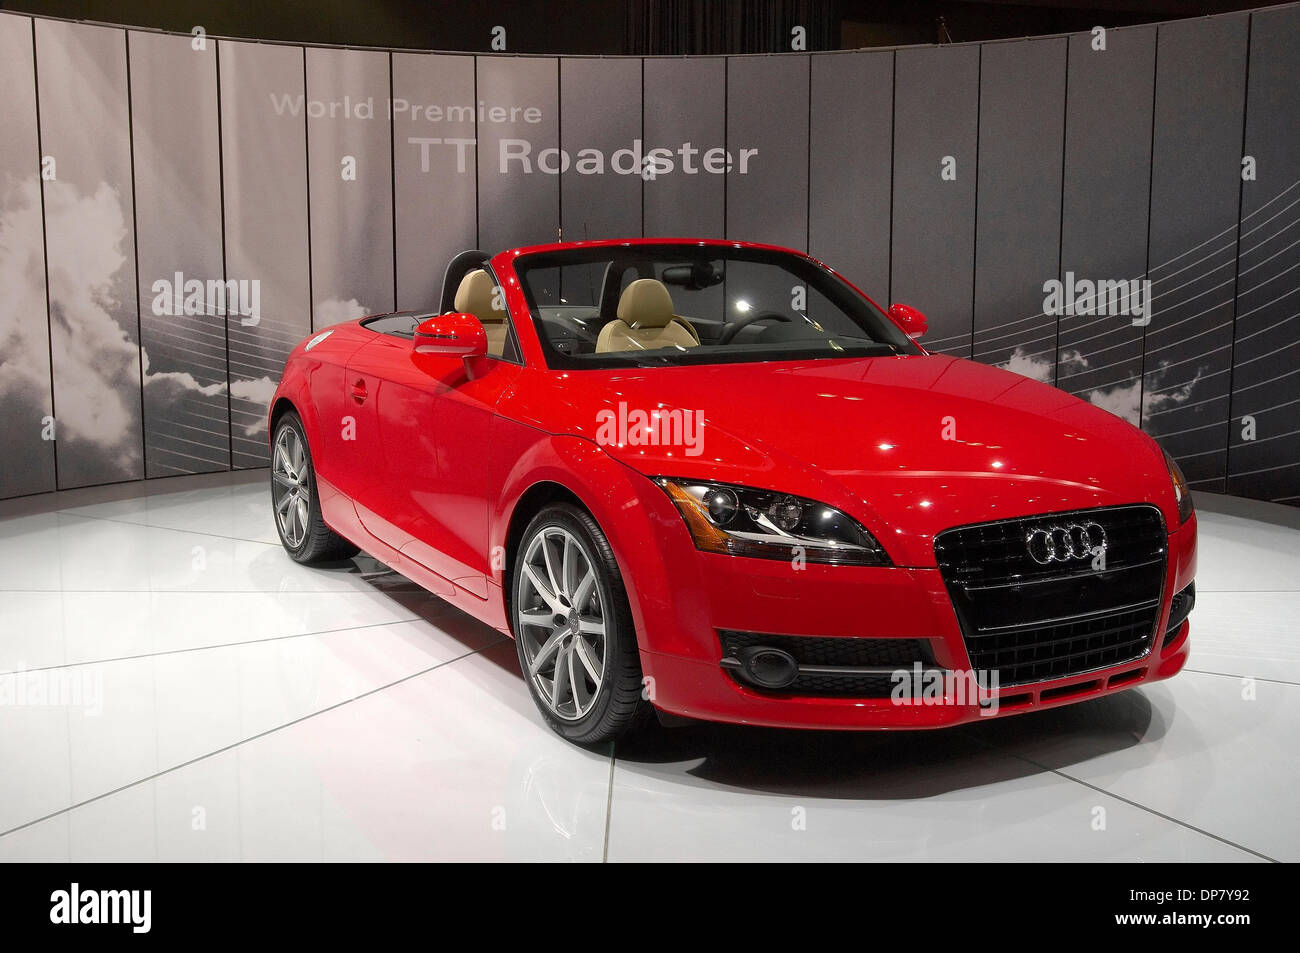 Audi Tt Roadster Stockfotos und -bilder Kaufen - Alamy